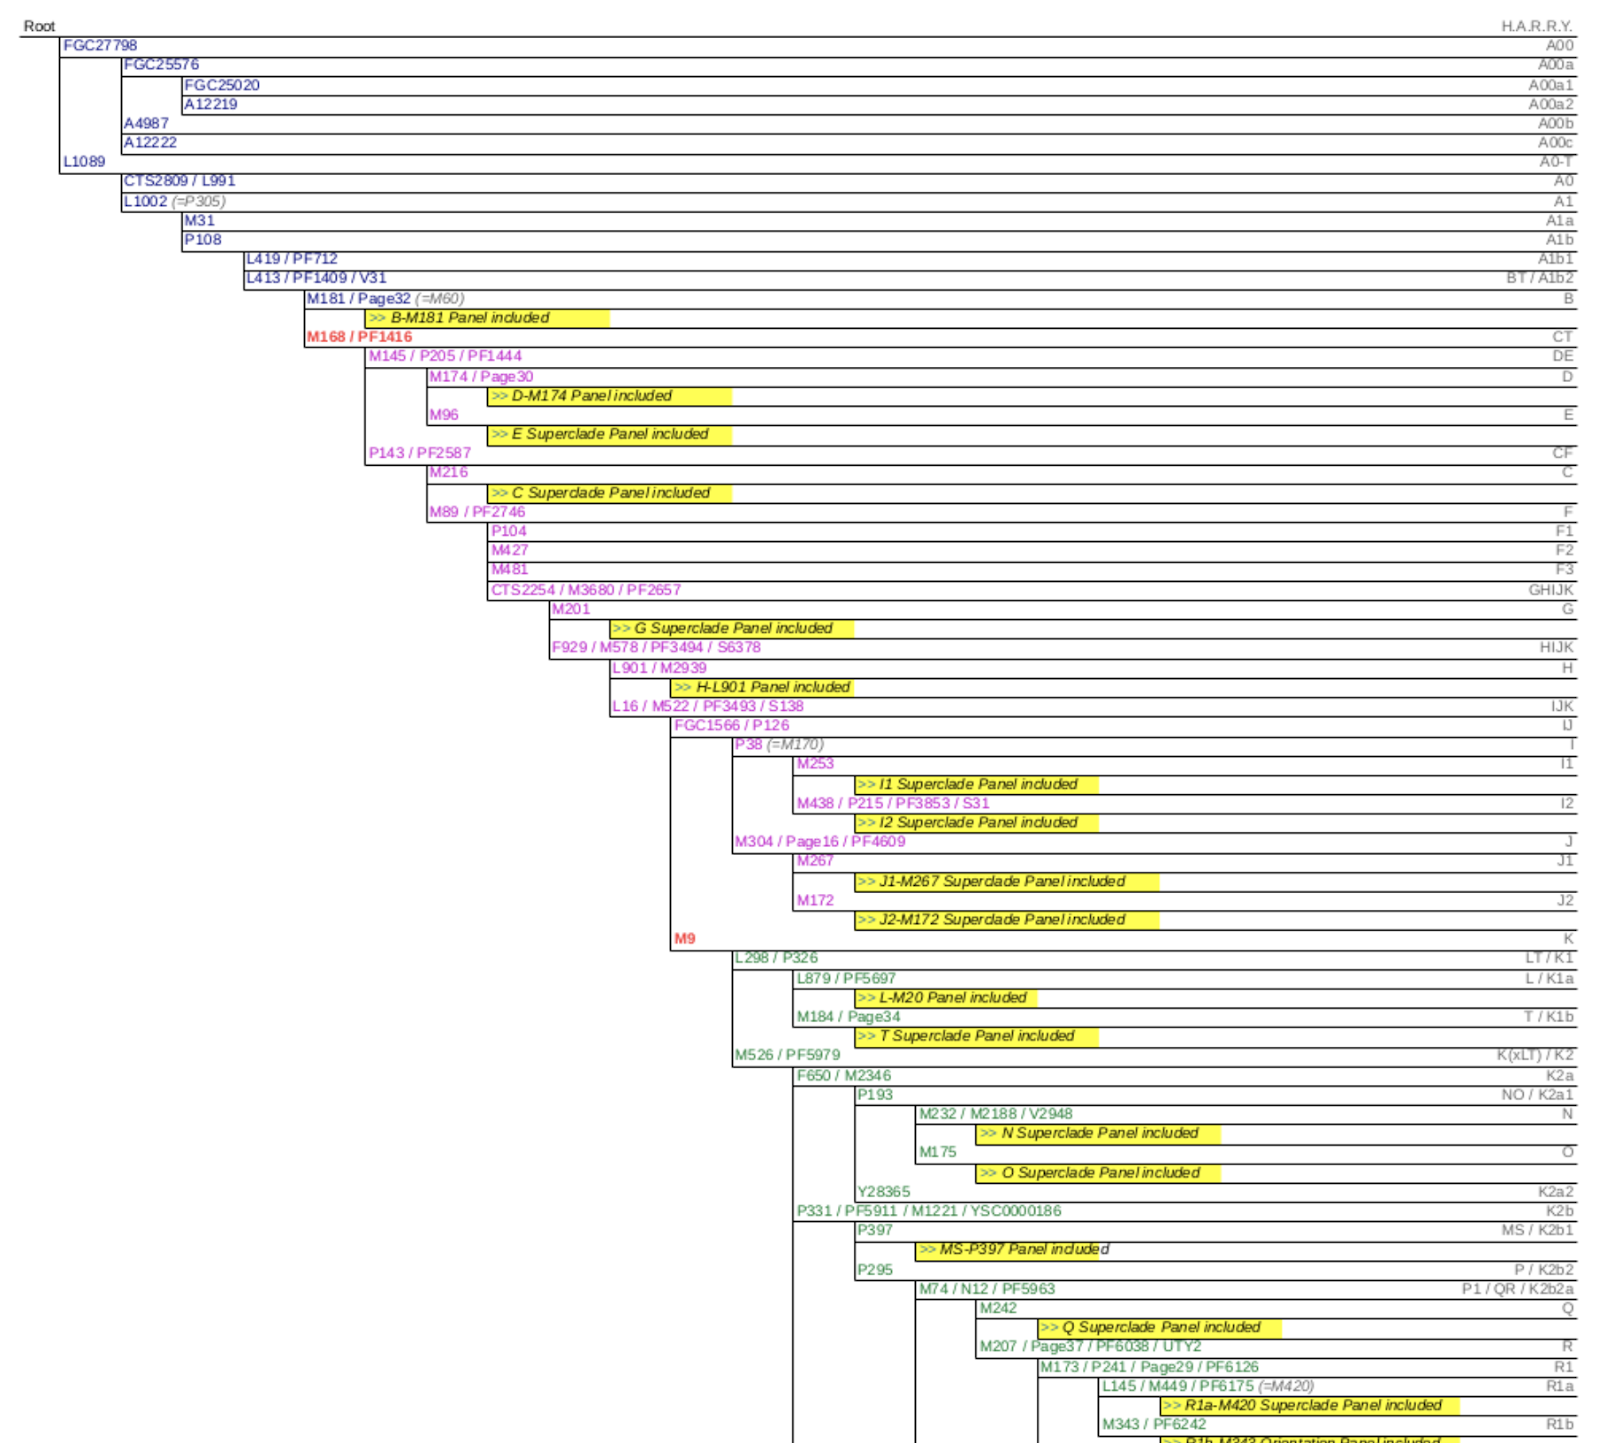 YSEQ Y chromosome haplogroup tree.